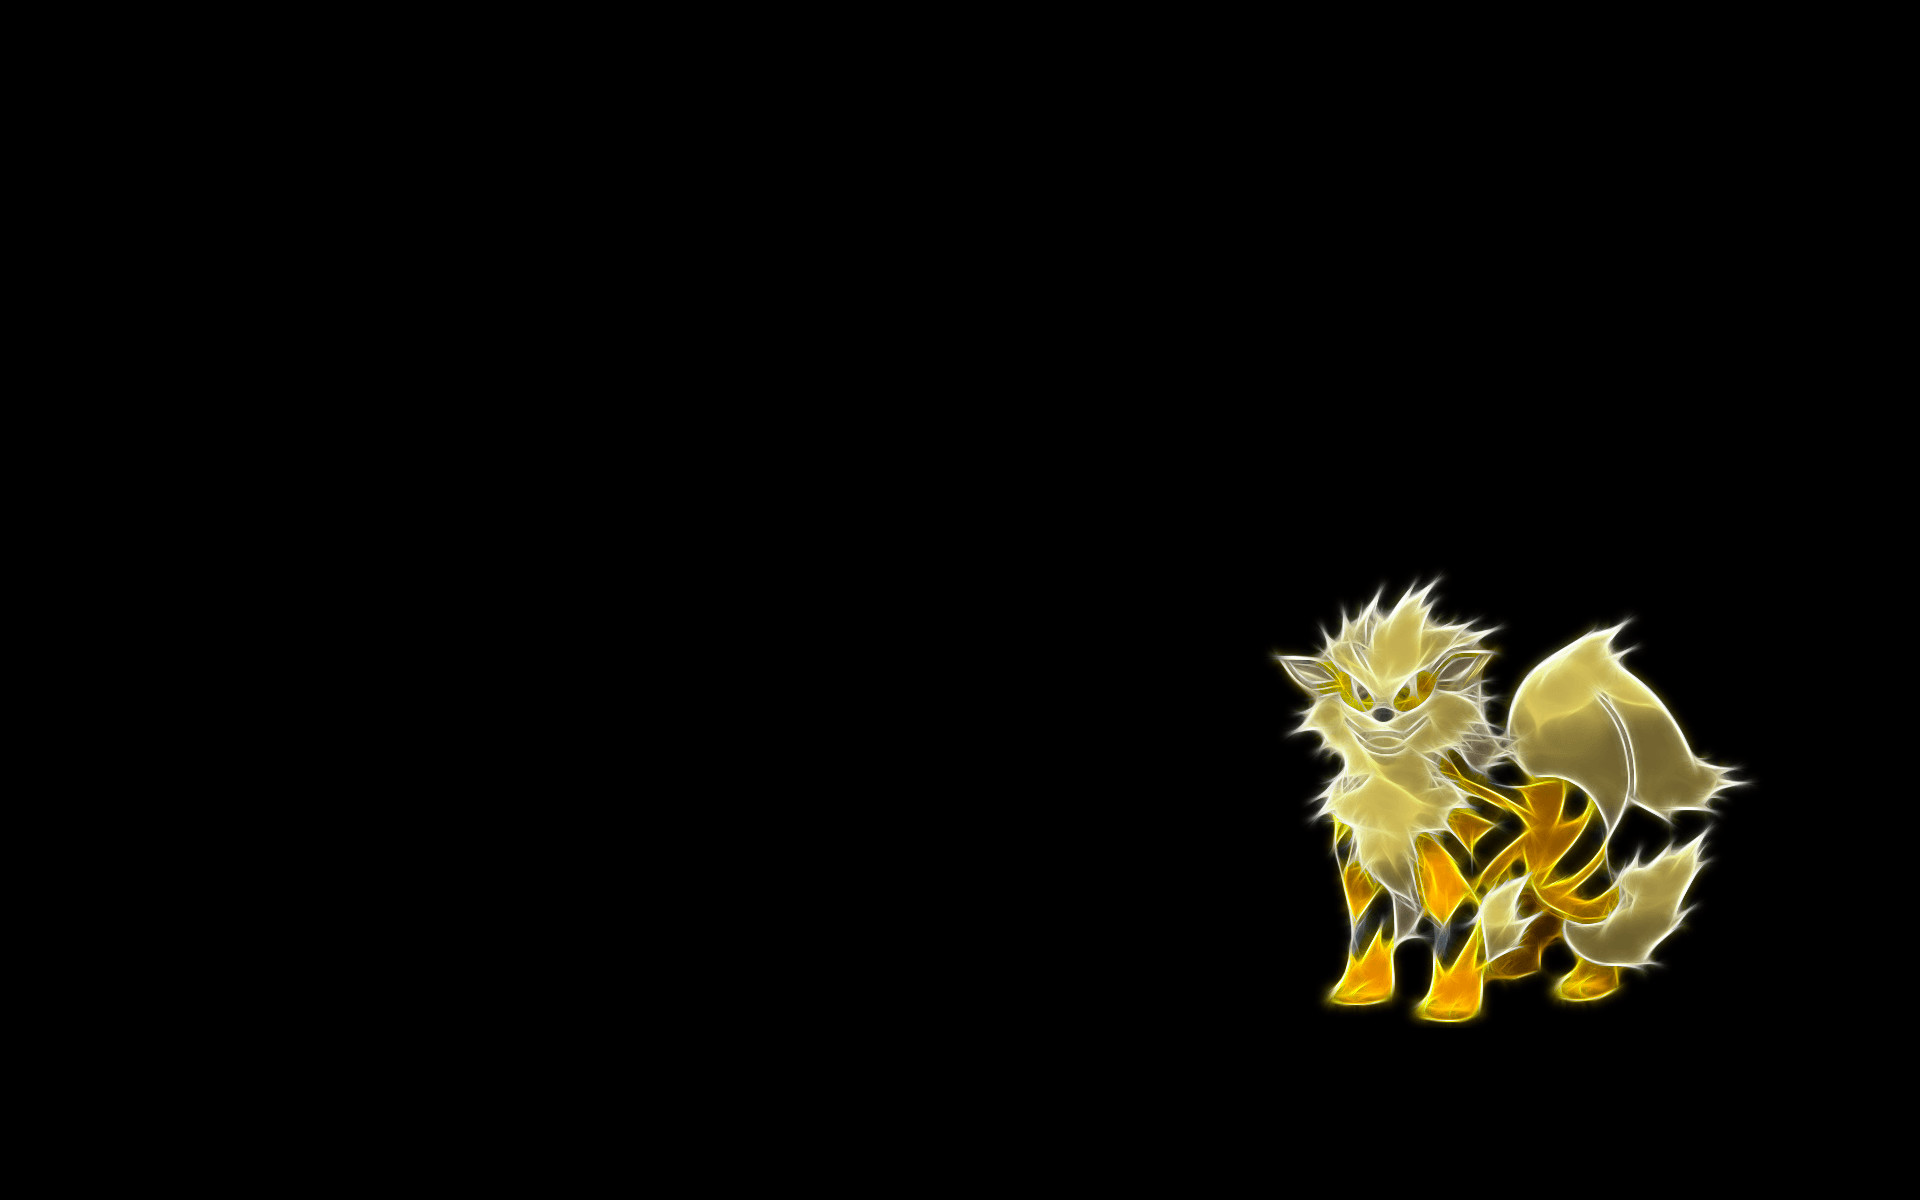 Cute <b>Pokemon Wallpapers Desktop Background</b>. Cute <b